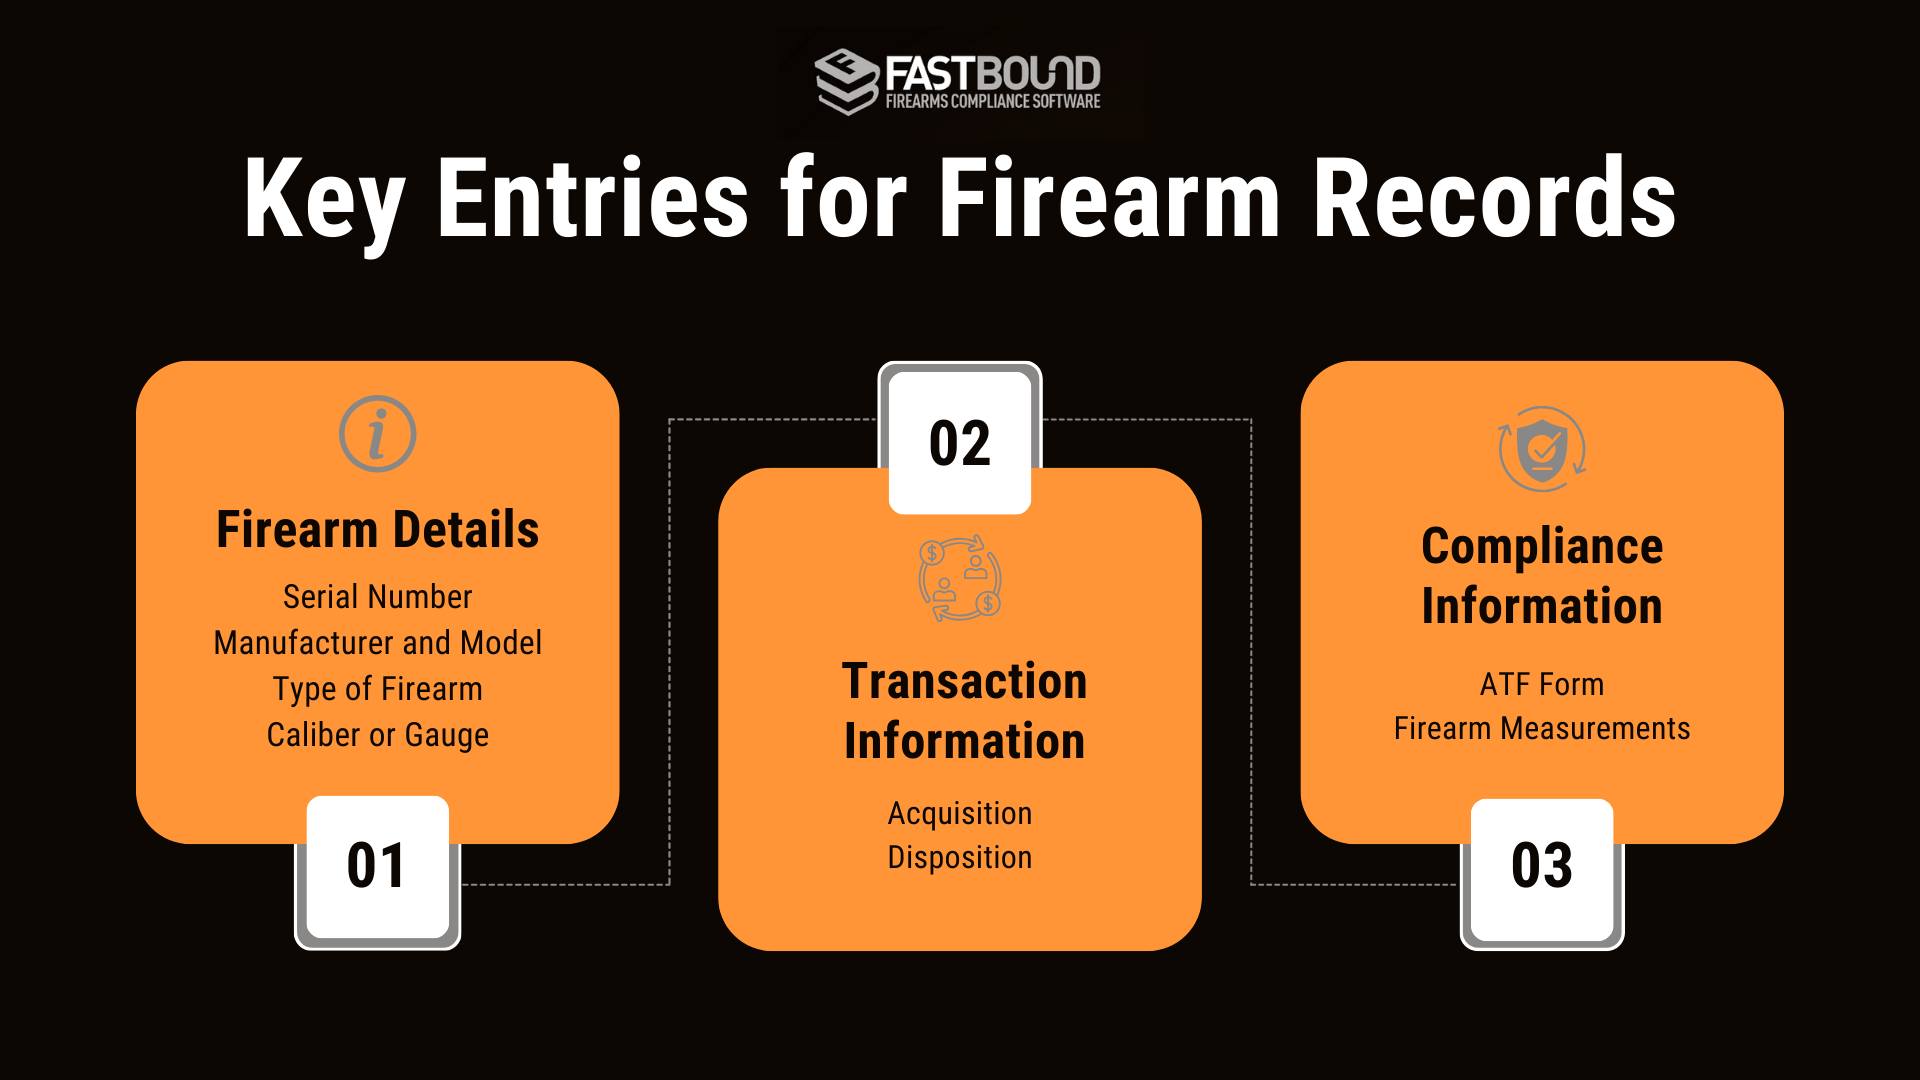 An infographic describing the key entries for firearm records. 